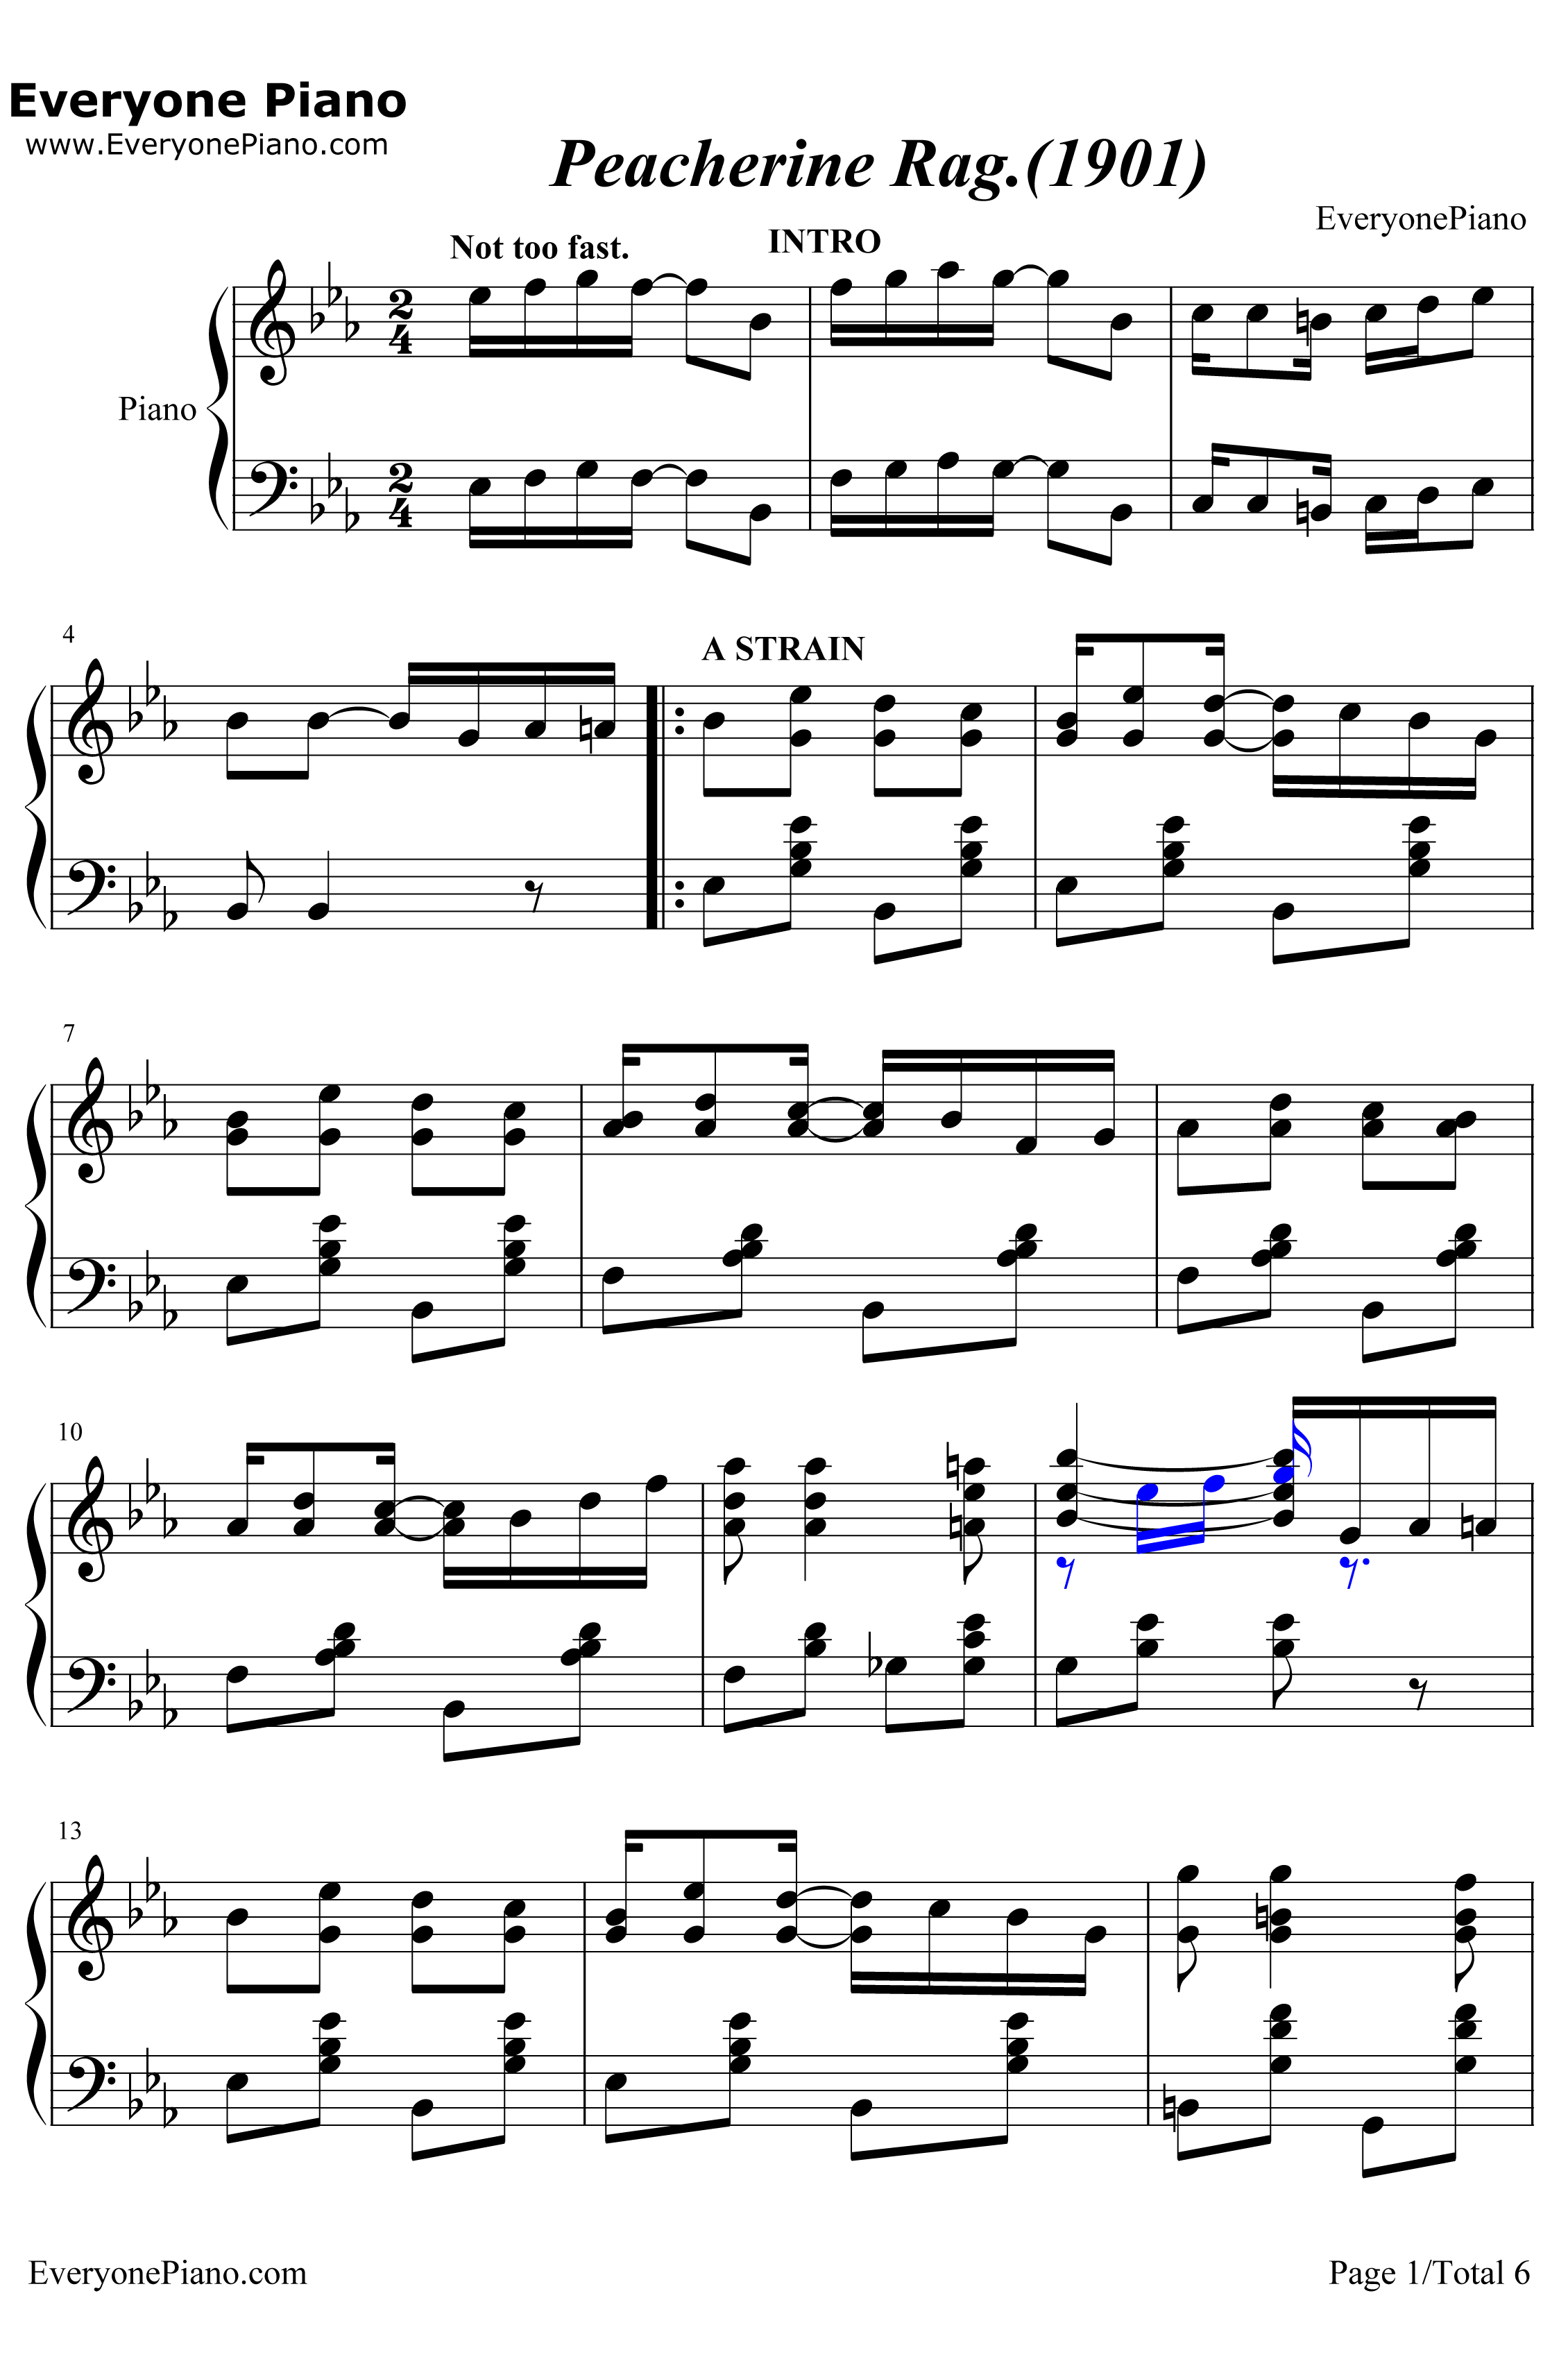 Peacherine Rag钢琴谱-ScottJoplin-海上钢琴师OST1